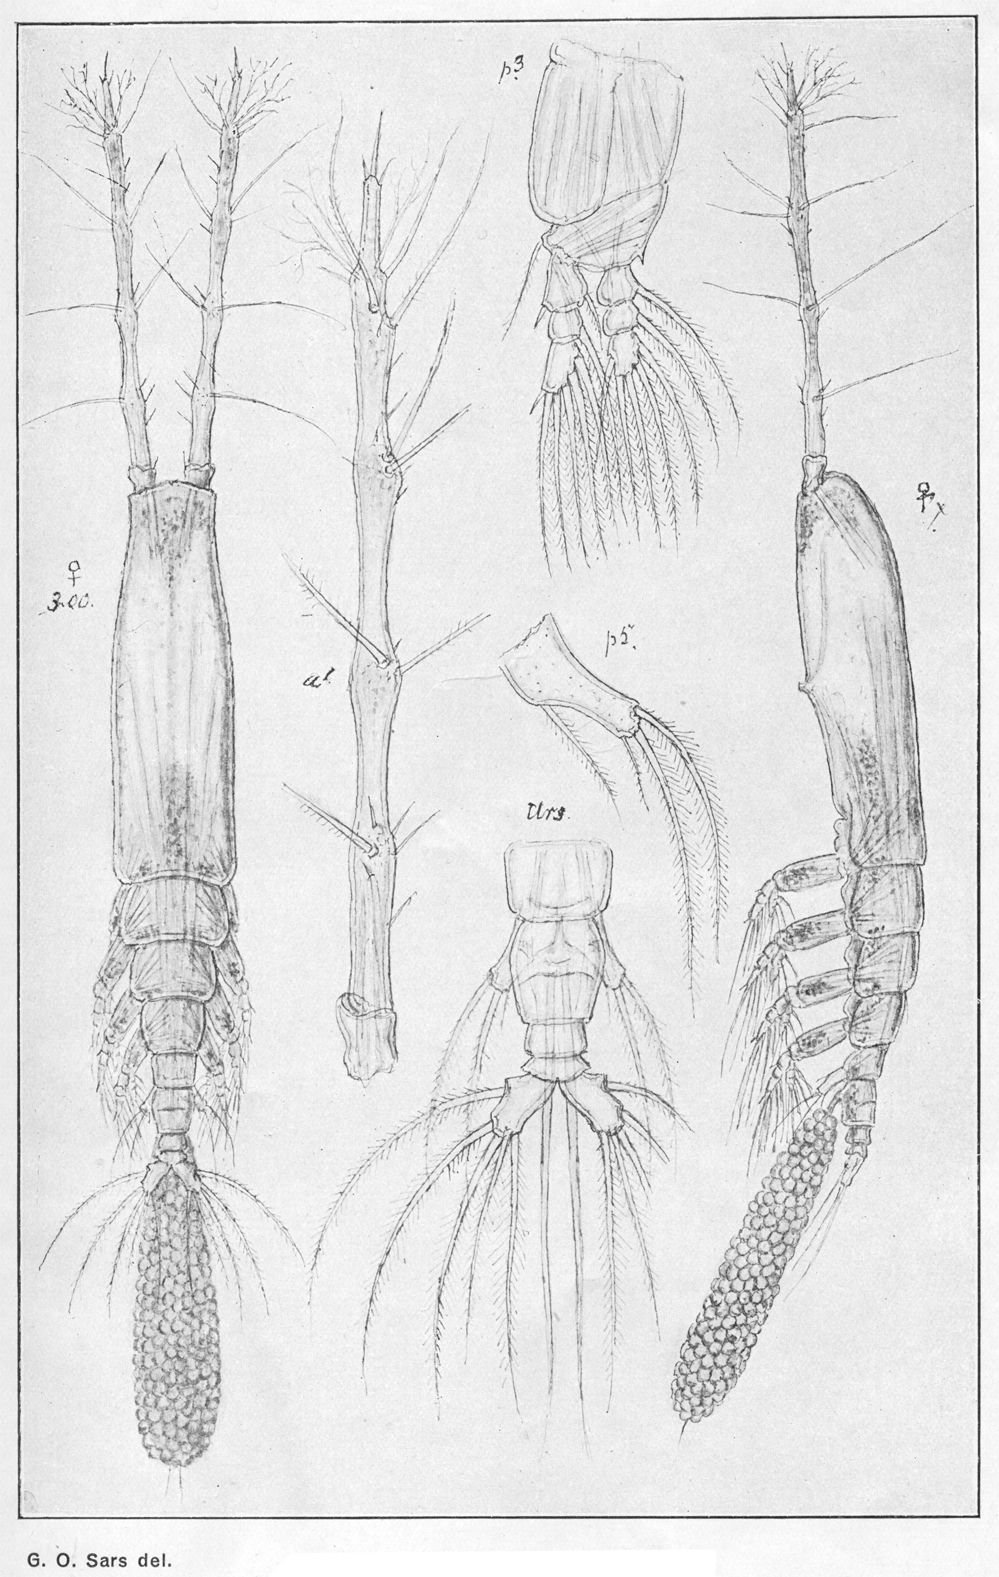 Espce Monstrilla longiremis - Planche 8 de figures morphologiques